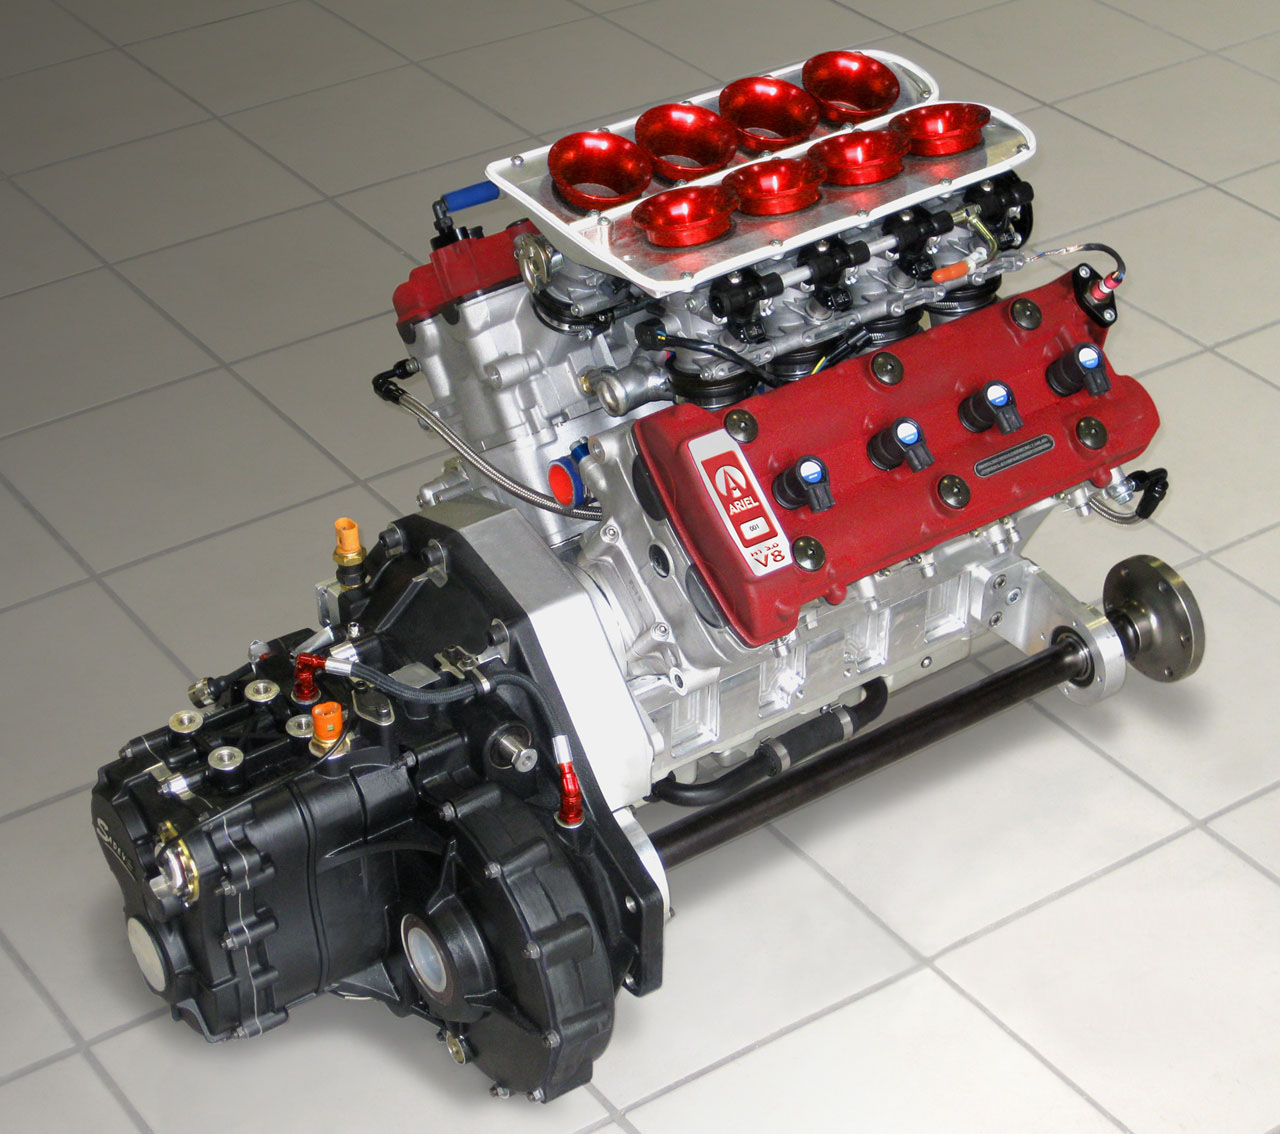 Sub5Zero |Ariel Atom 500 V8 - Highest Power to Weight Ratio Ever!